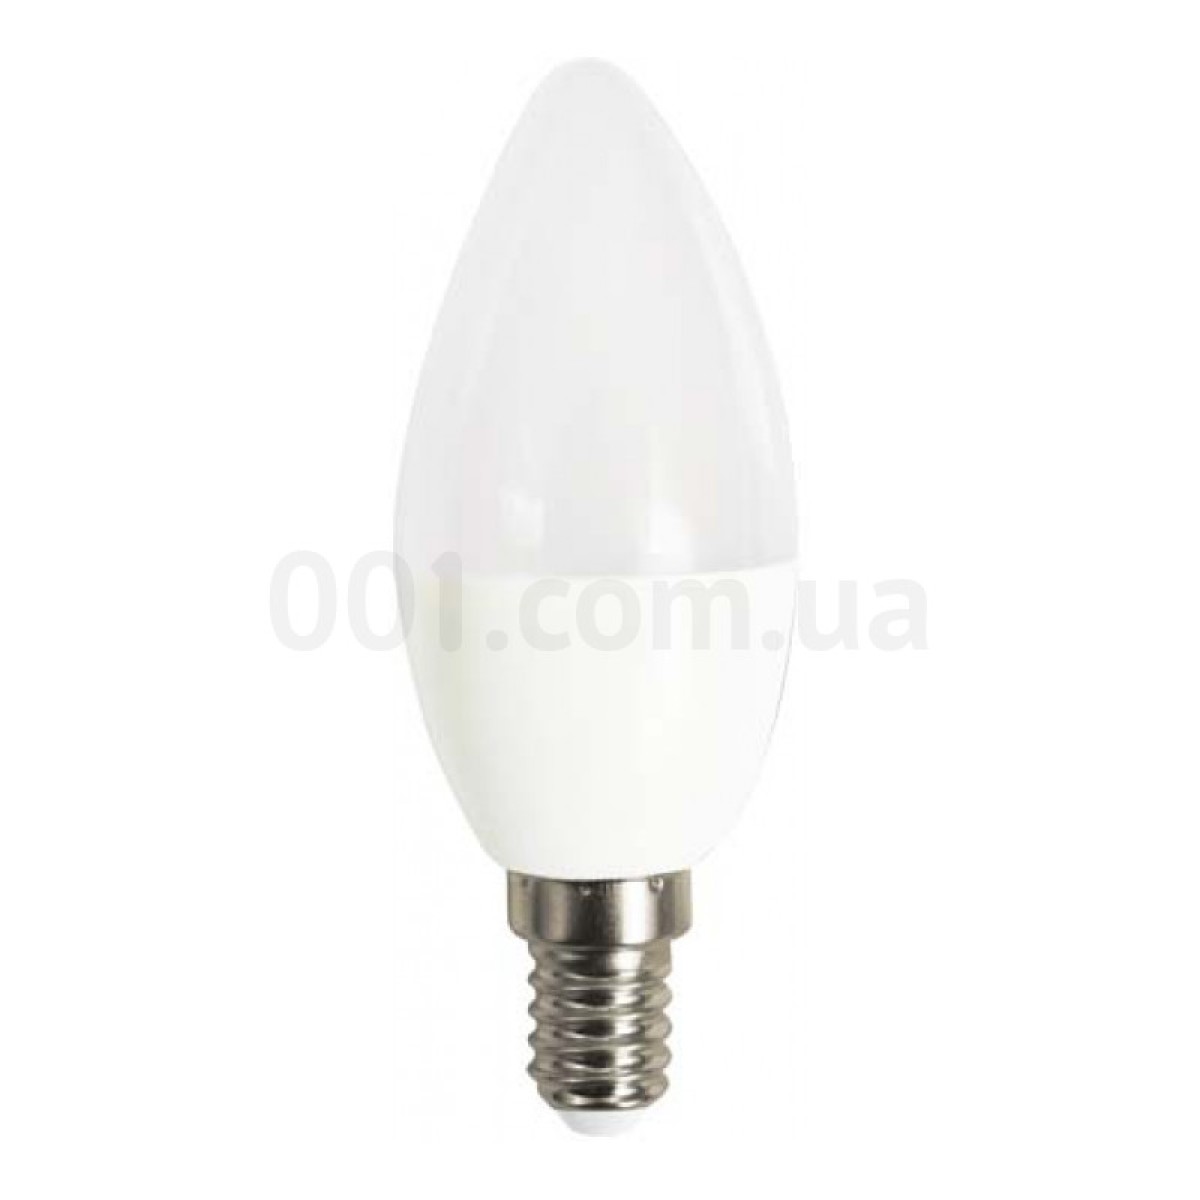 Світлодіодна лампа LB-720 C37 (свічка) 4Вт 2700K E14, Feron 256_256.jpg